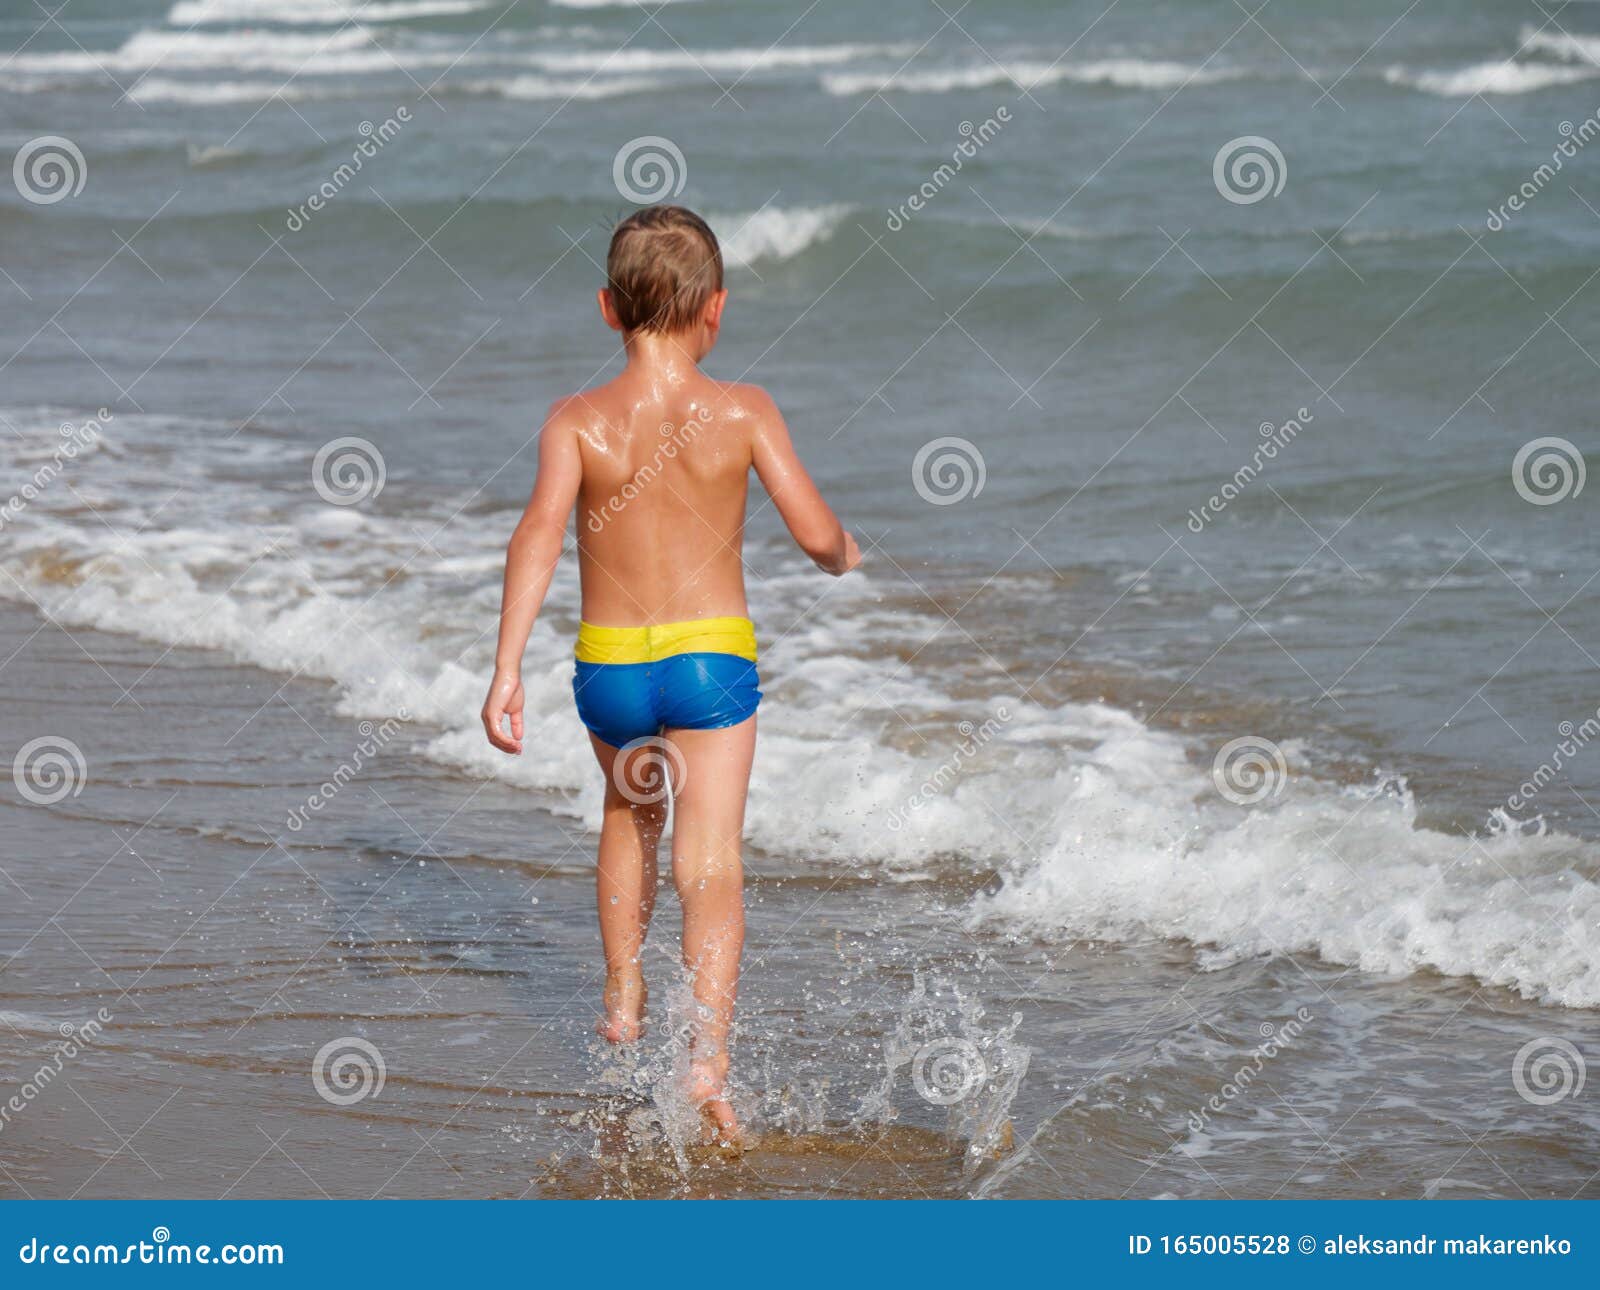 за голыми детьми на пляже фото 34